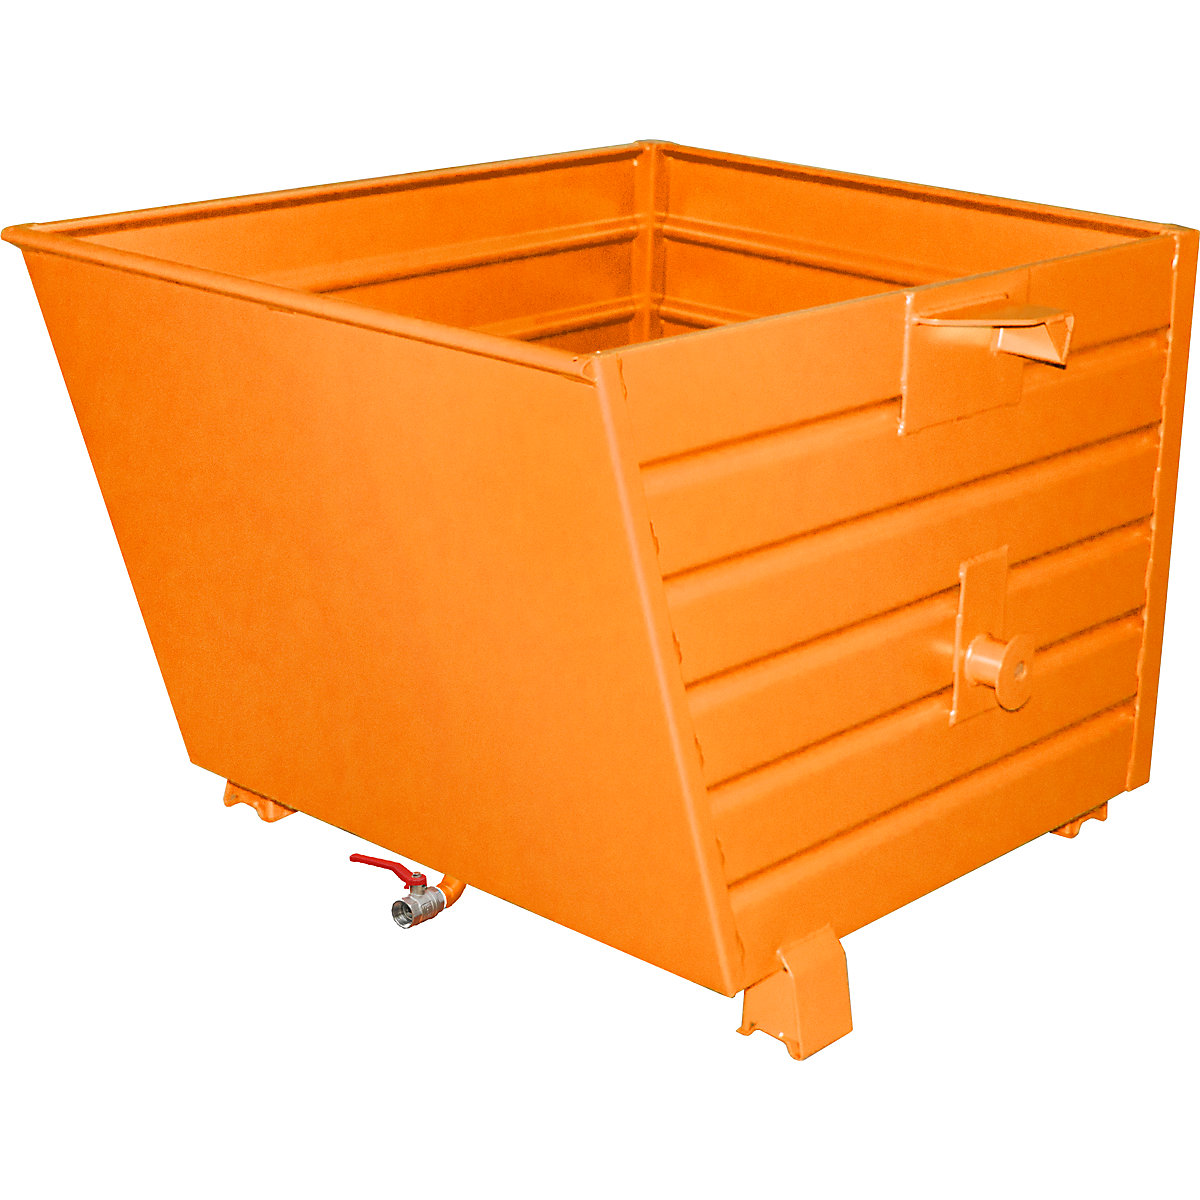 EUROKRAFTpro – Container basculant și stivuibil pentru șpan BSL, volum 0,9 m³, galben-portocaliu